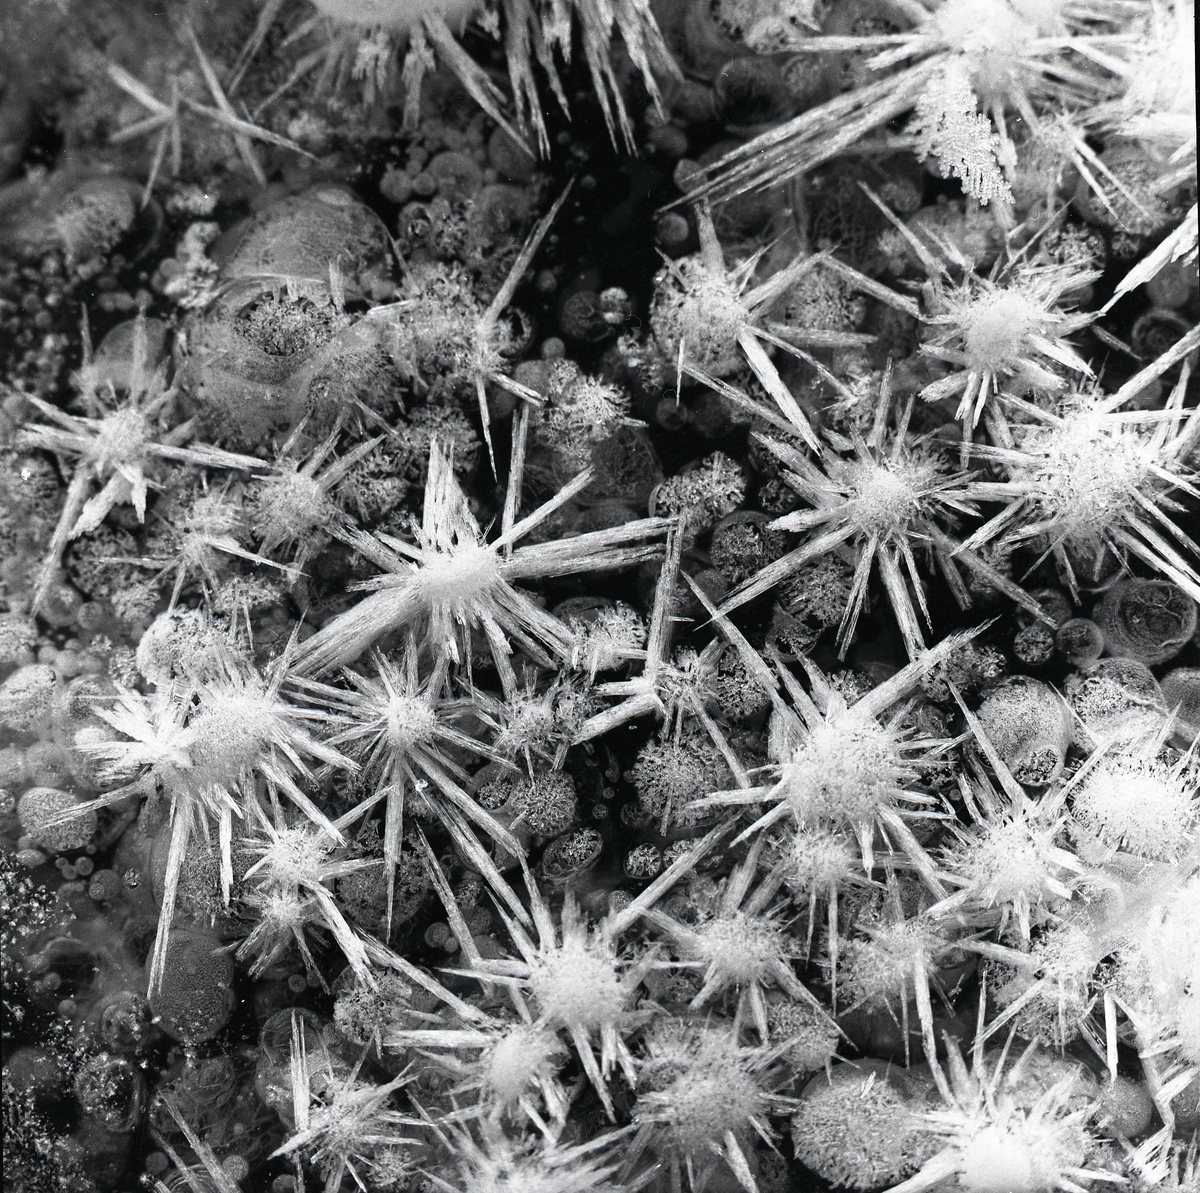 Bollar av snö med taggiga ispiggar bildar froststjärnor den 13 december 1959.